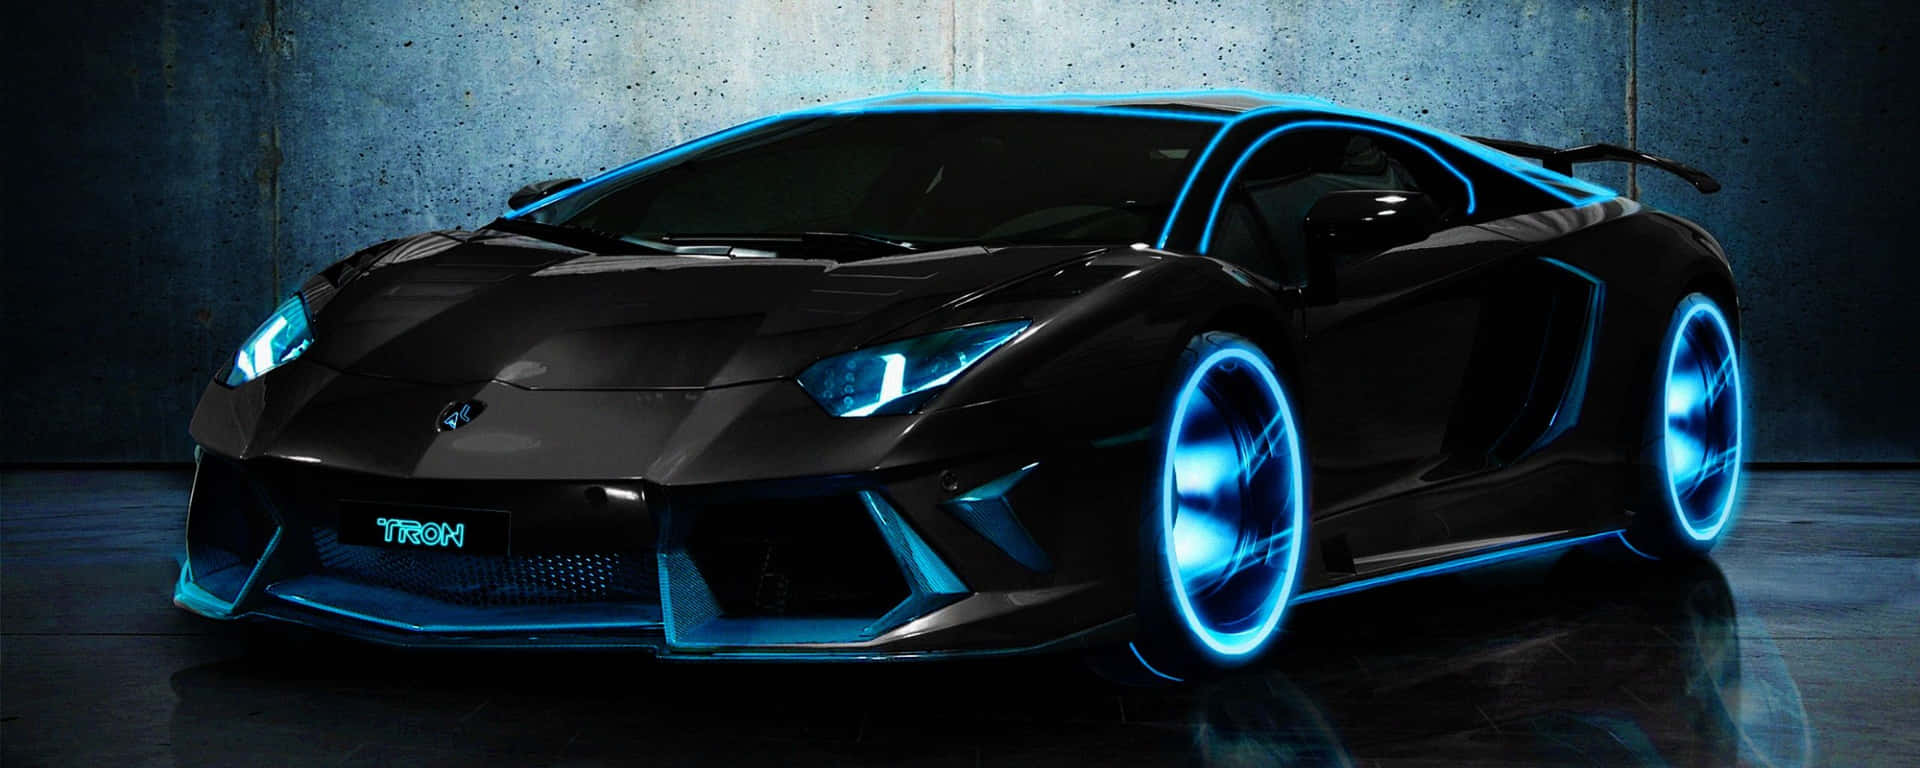 Cooleschwarze Lamborghini Aventador Mit Blauen Felgen Wallpaper